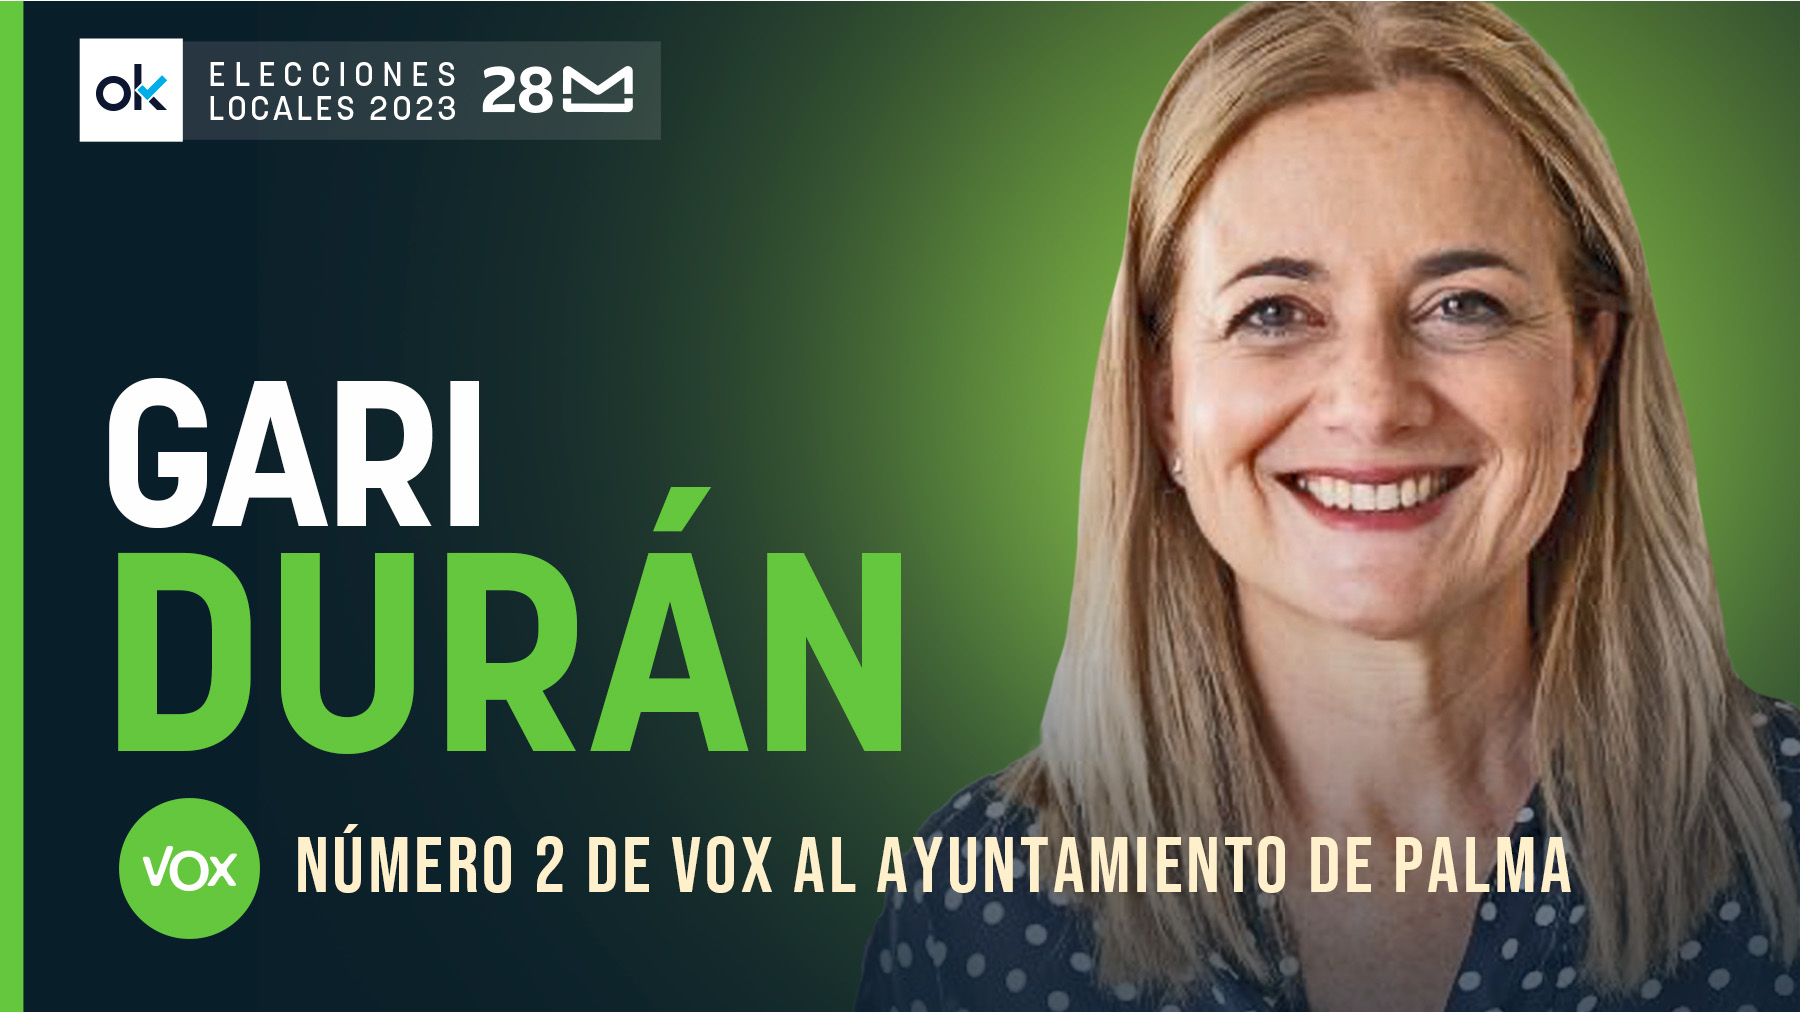 entrevista Gari Durán-elecciones-28M-ok INTERIOR (1)